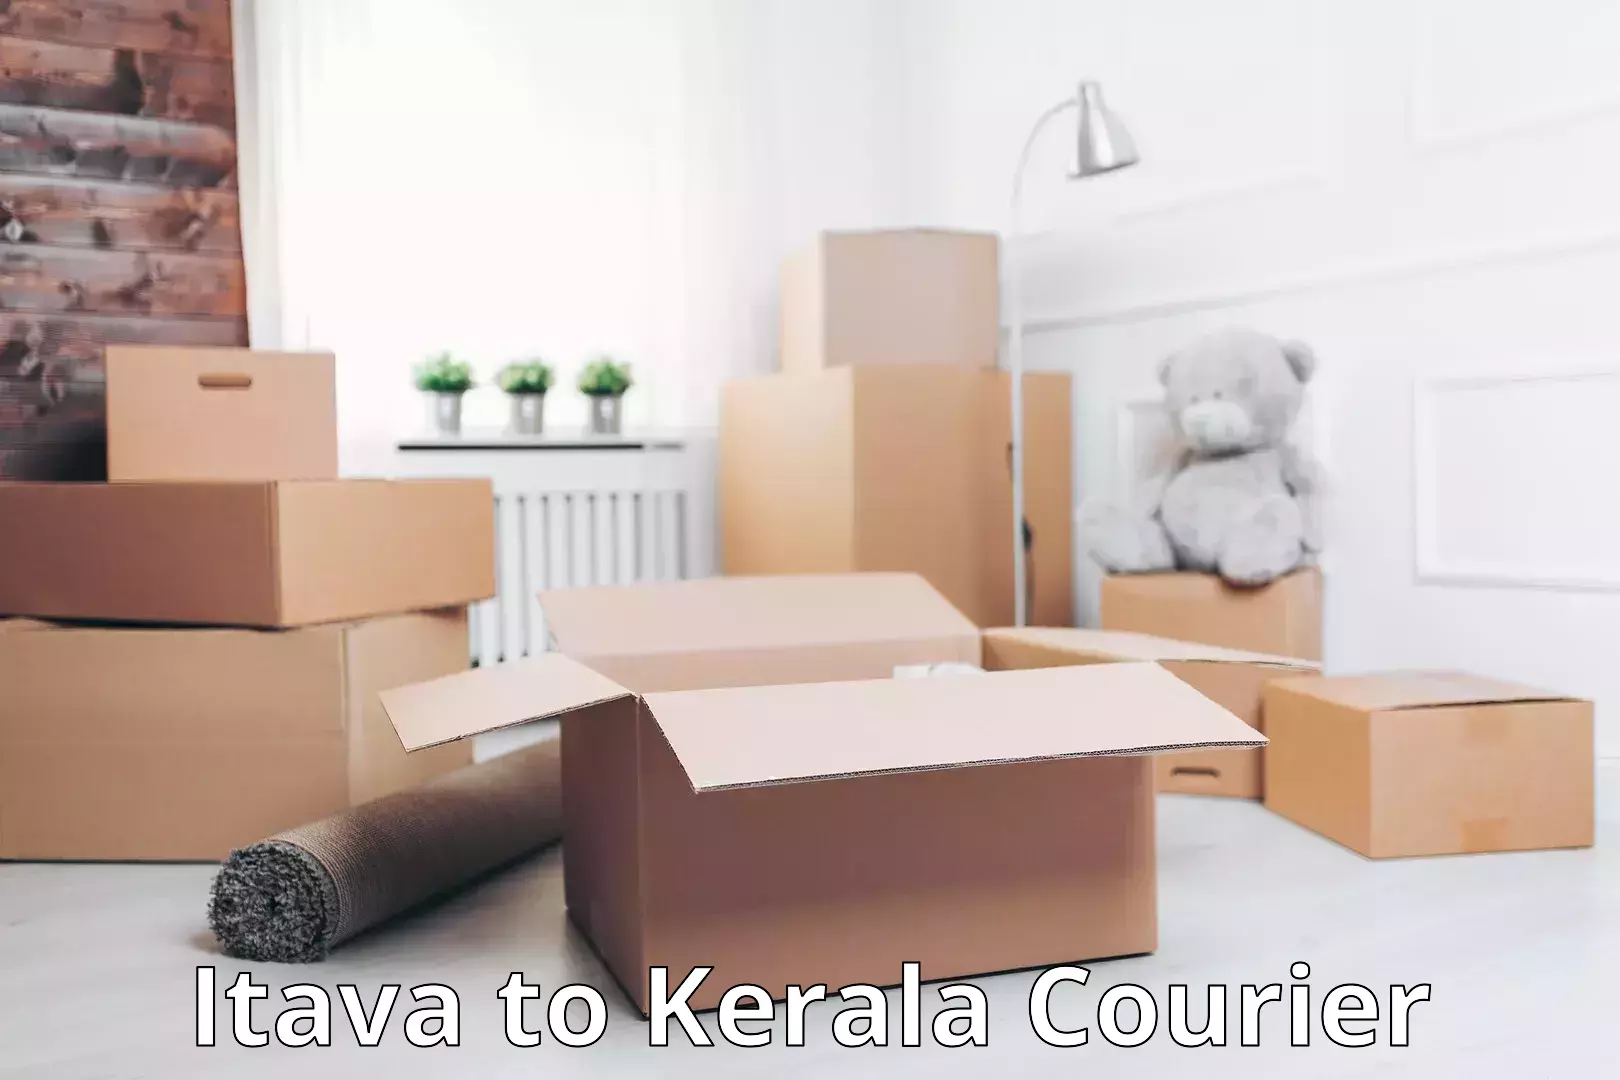 Door-to-door baggage service Itava to Kerala